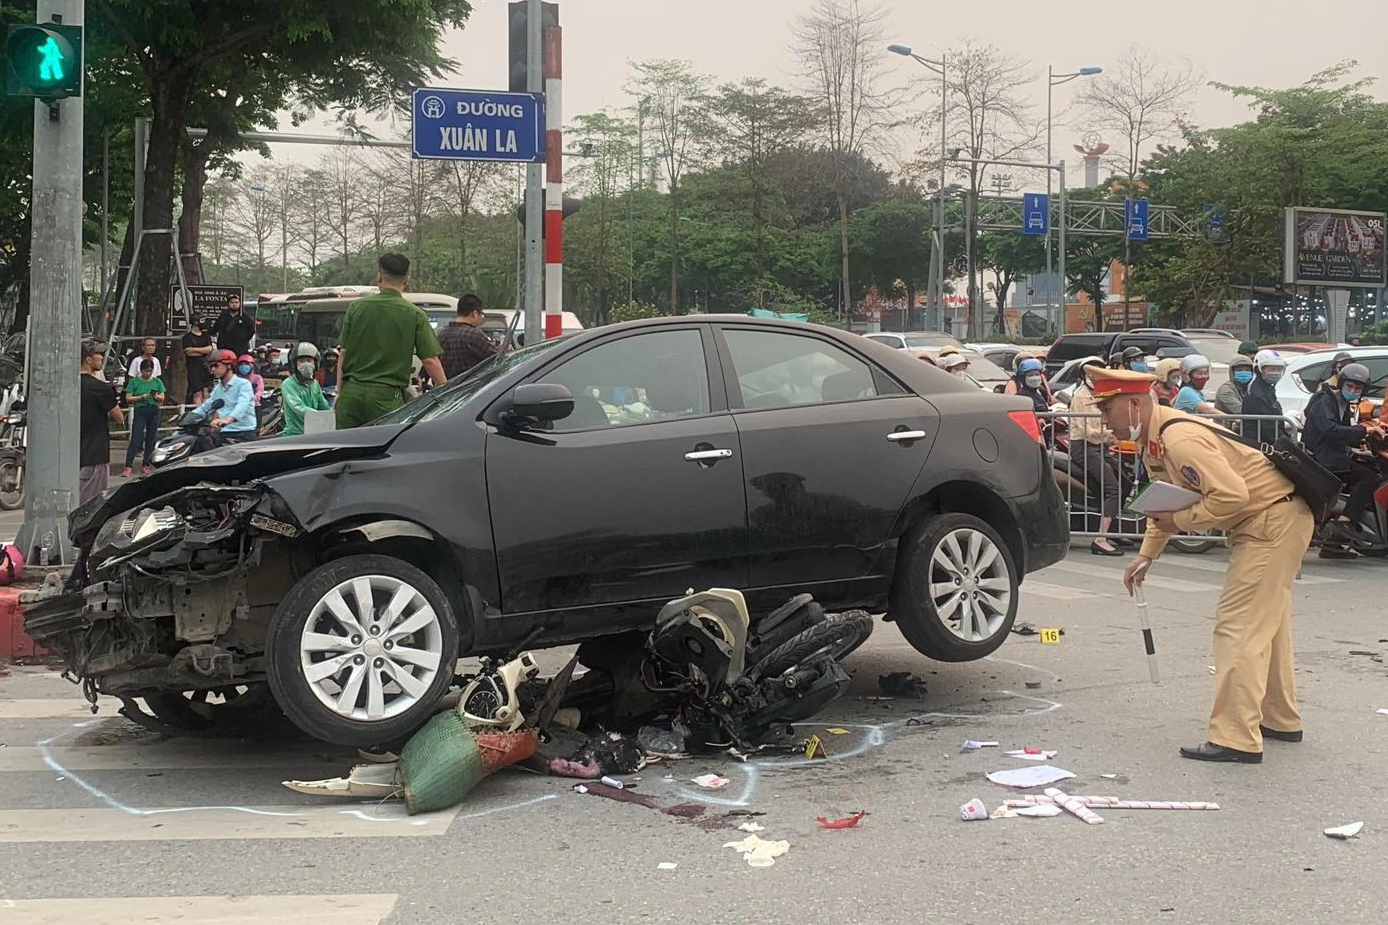 Tài xế ô tô kể lại khoảnh khắc tông liên hoàn 17 xe máy ở Hà Nội - 2